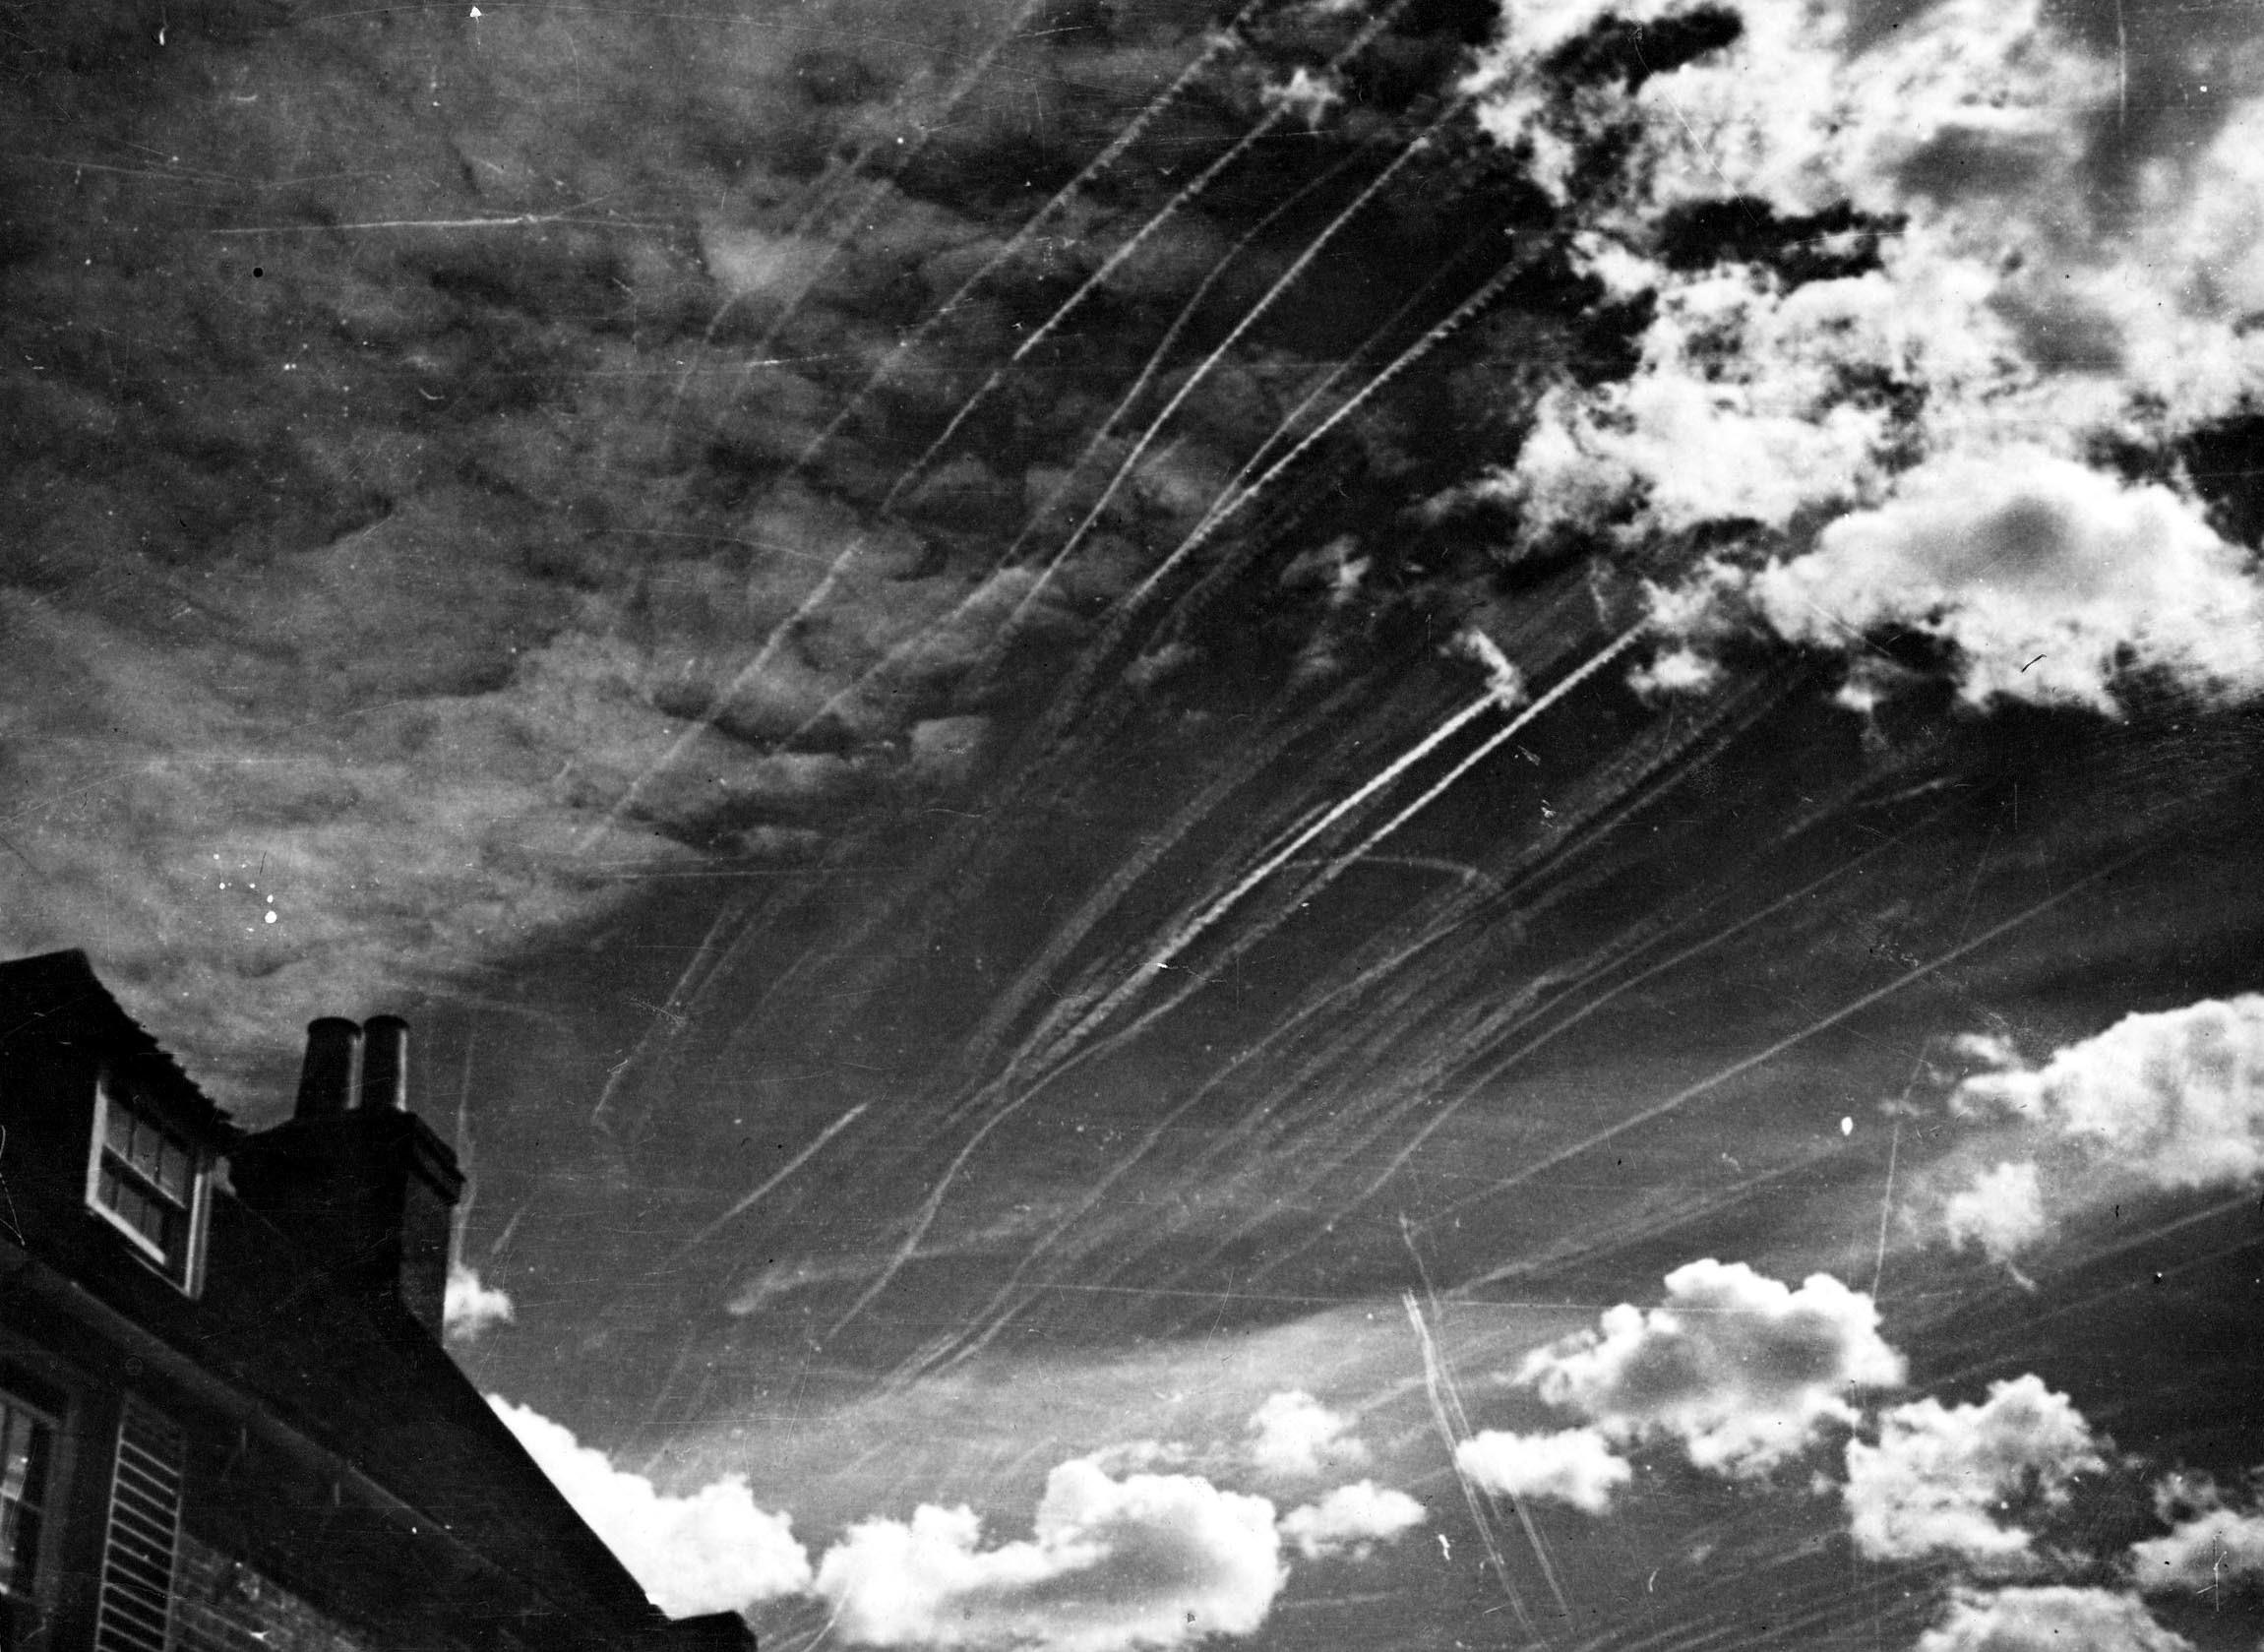 Walki powietrzne nad Londynem, bitwa o Anglię, wrzesień 1940 r.